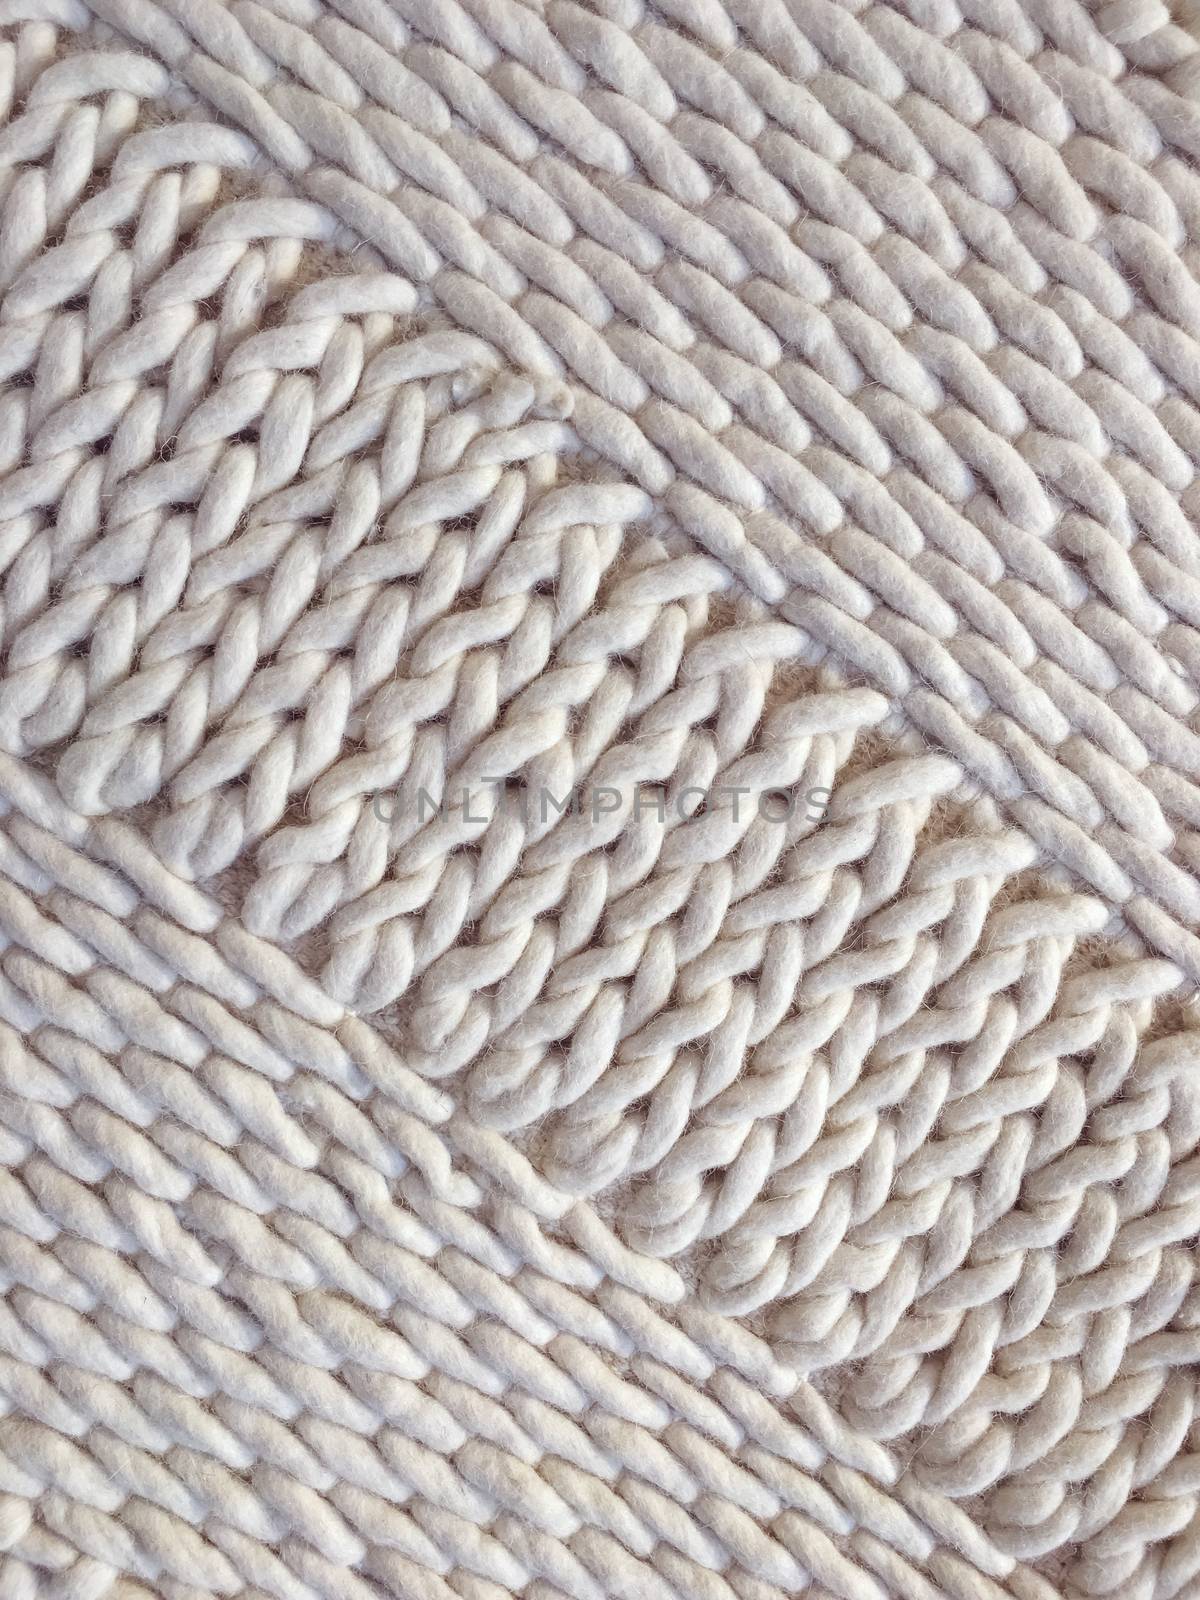 White wool handmade knitted background by anikasalsera